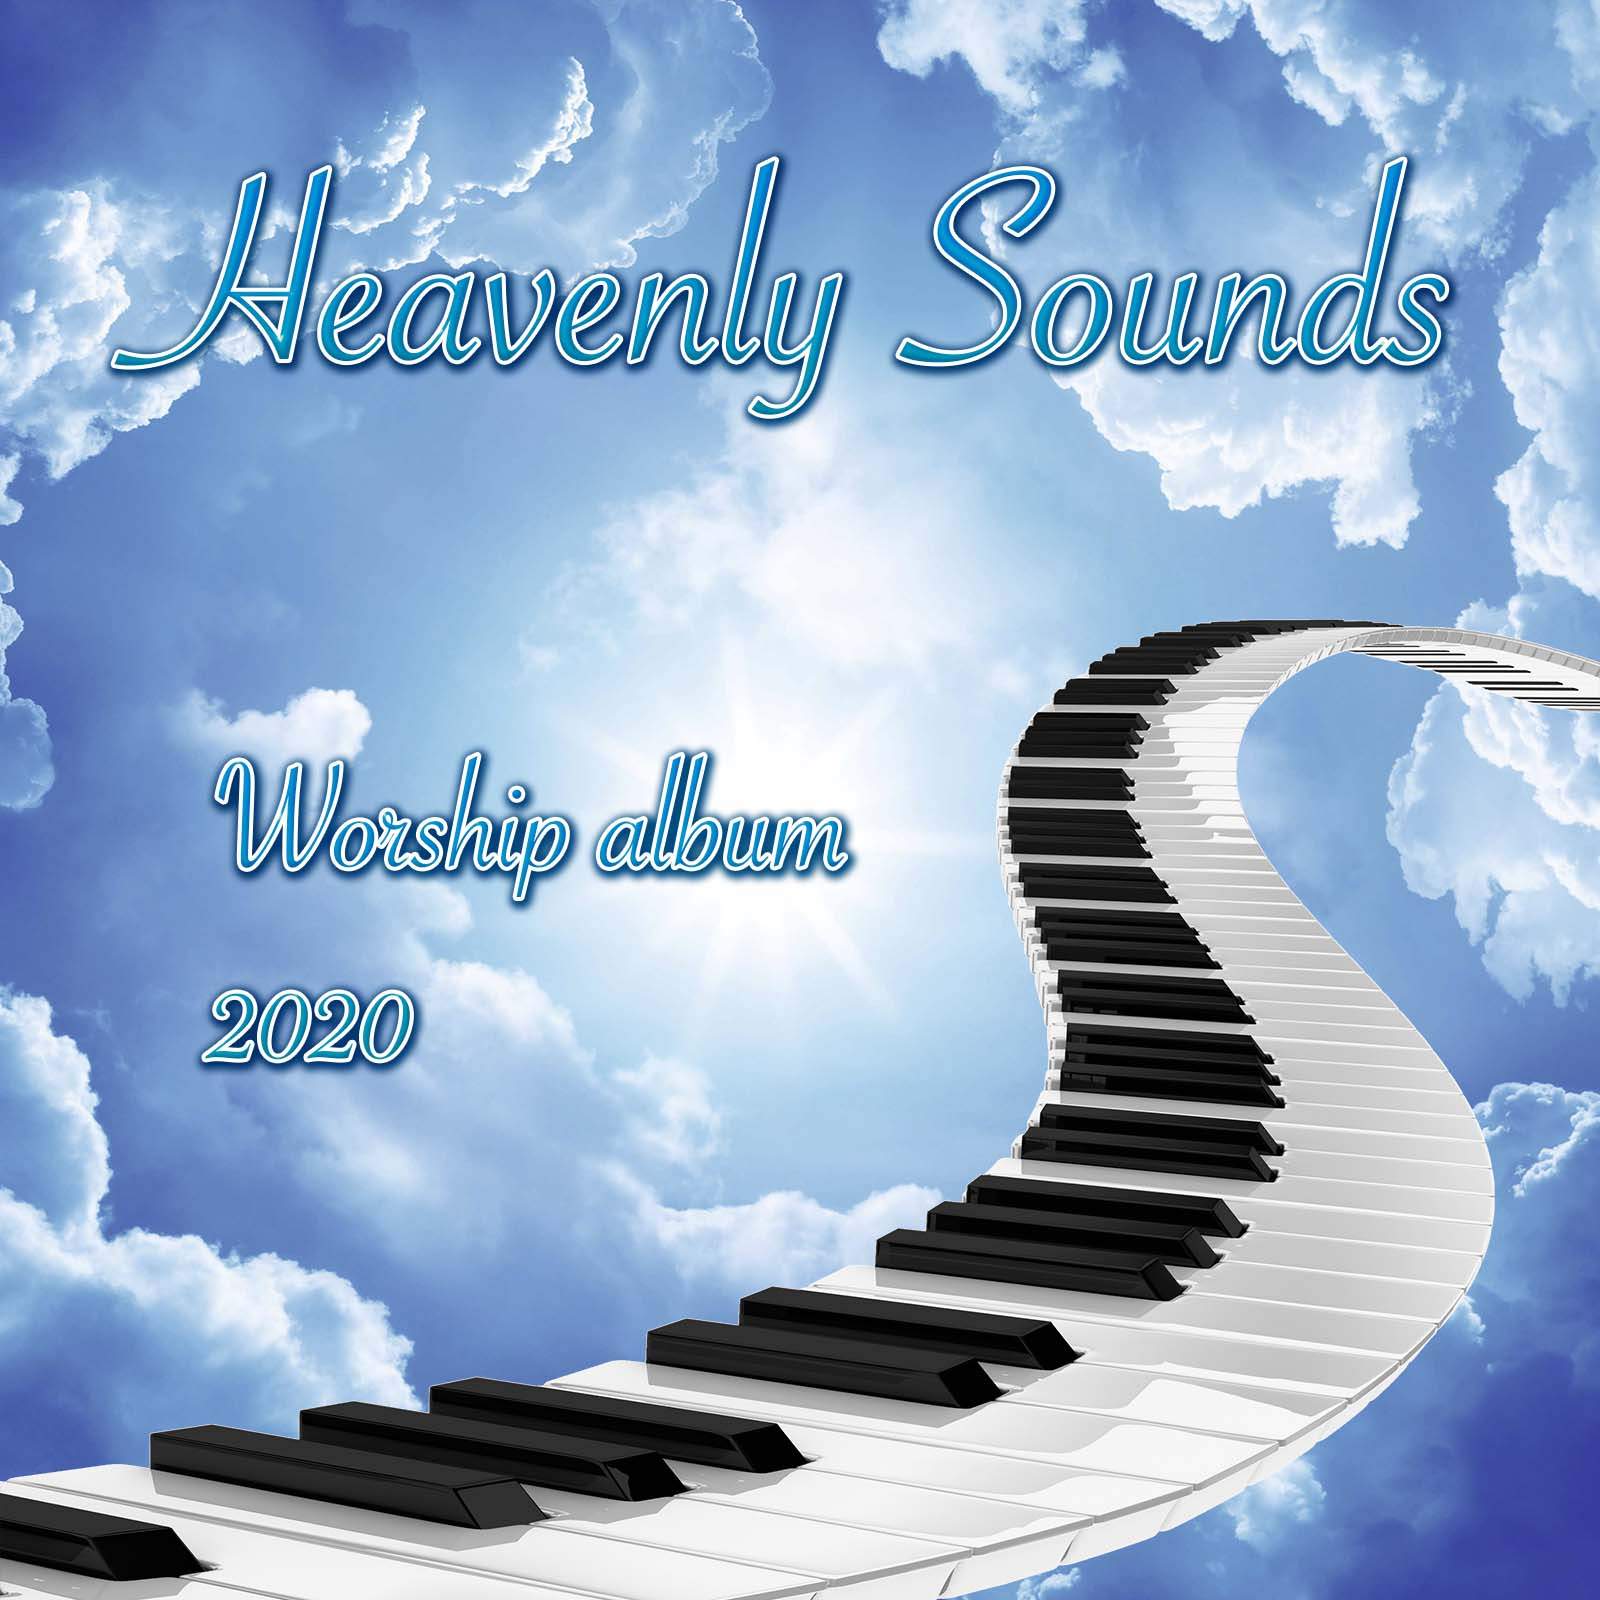 Heavenly Sounds - Worship album (2020) Музыка для молитвы, альбом слушать скачать